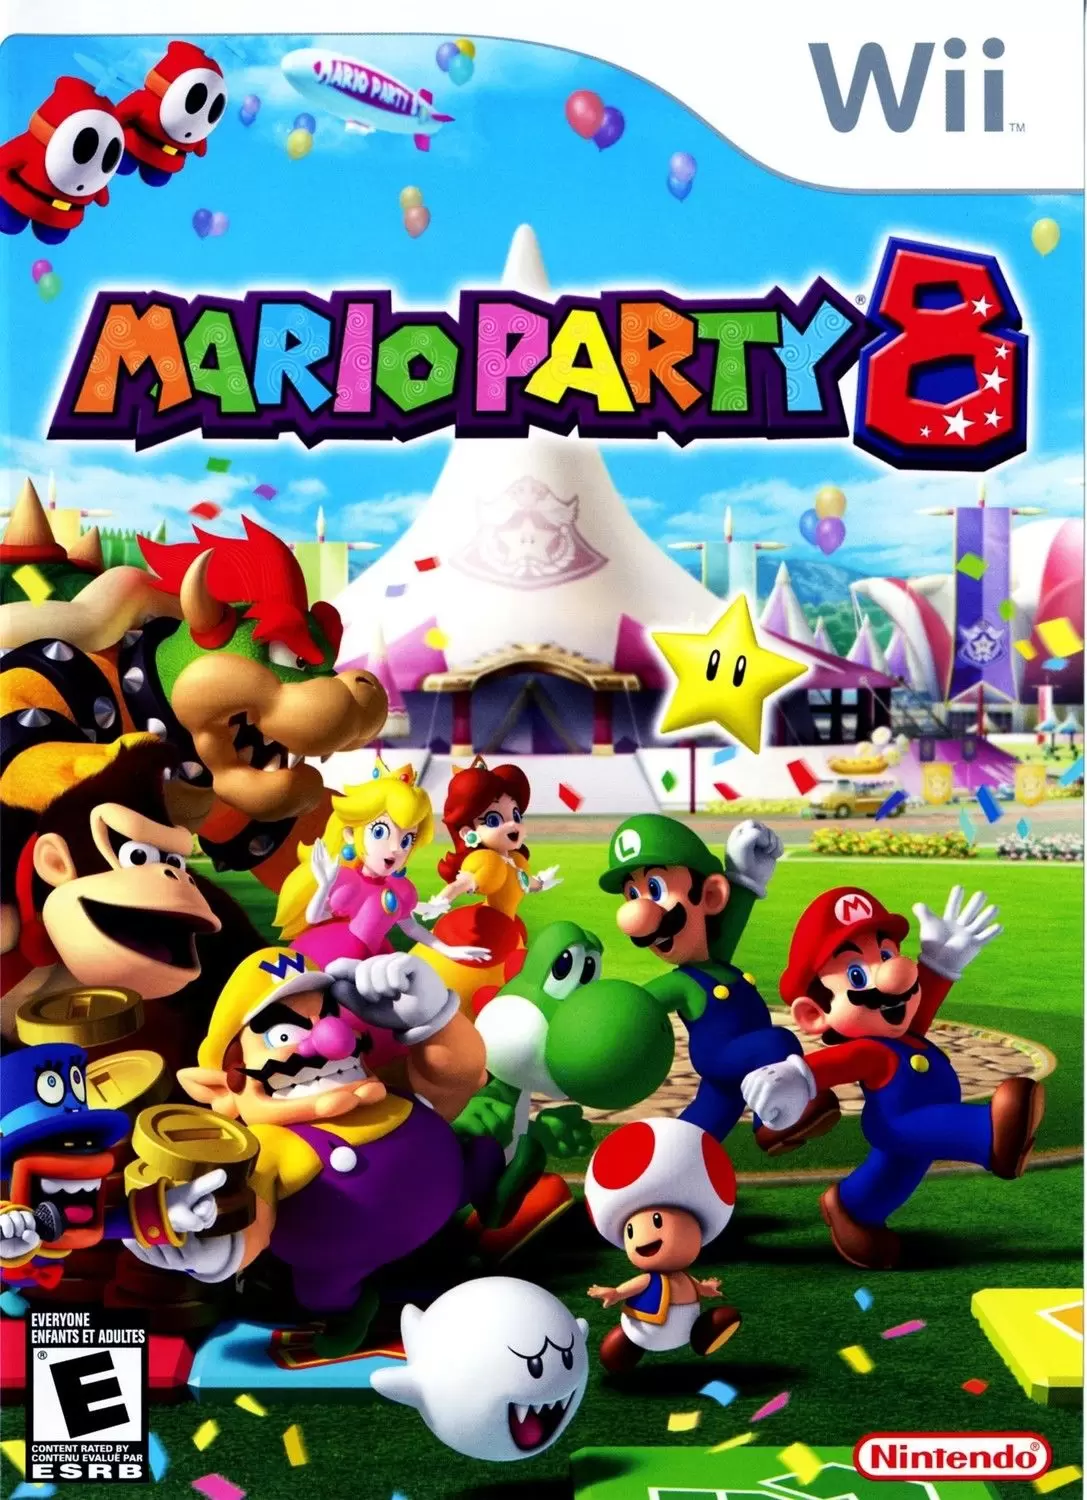 Nintendo Wii Games - Mario Party 8